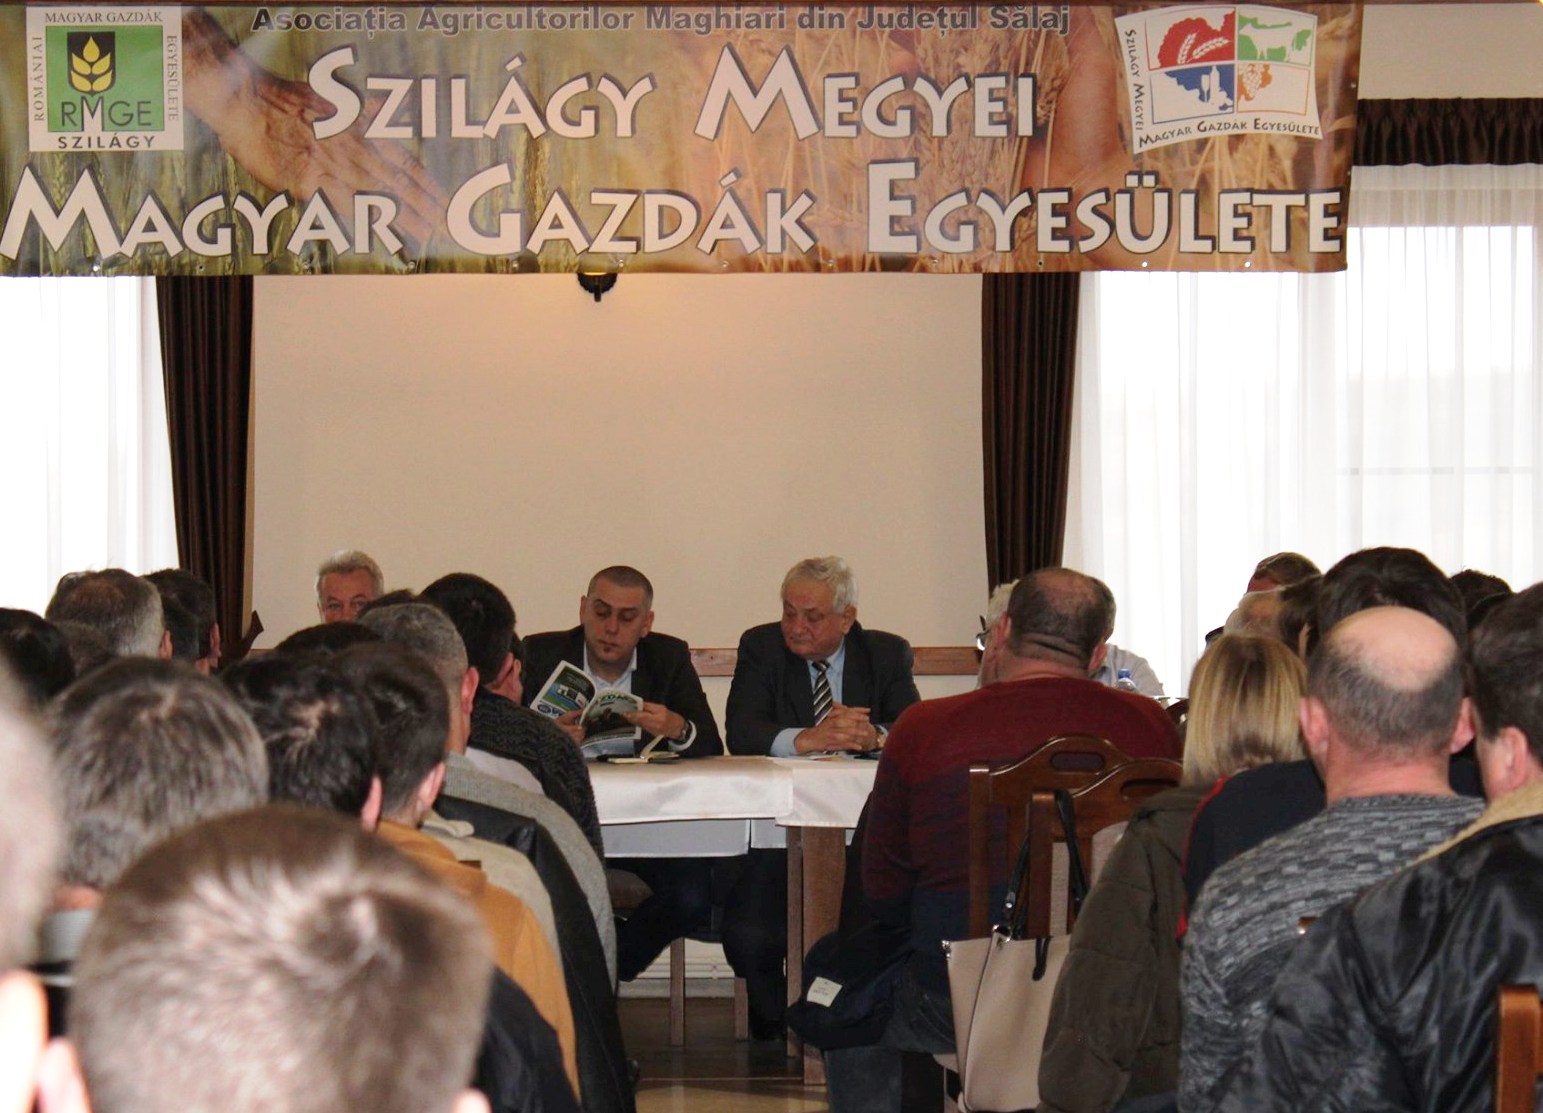 Éppen egy évvel ezelőtt találkoztak a szilágy megyei magyar gazdák, ahol tapasztalatot cseréltek és terveket egyeztettek